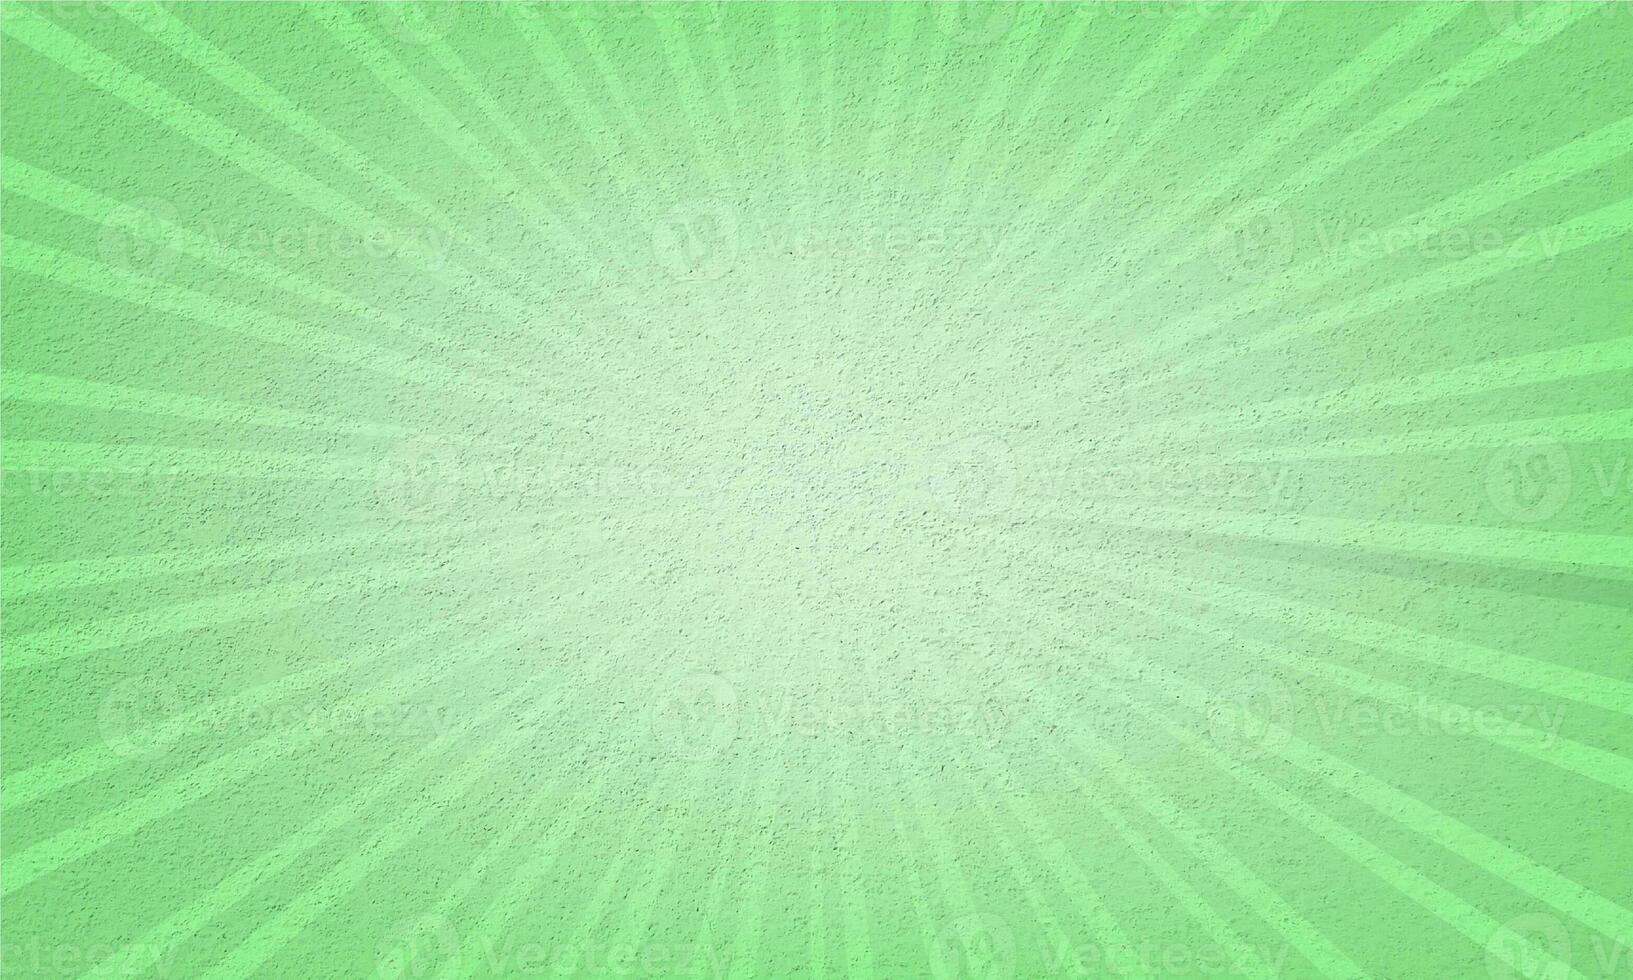 diseño de fondo de rayos de sol de color verde pálido foto